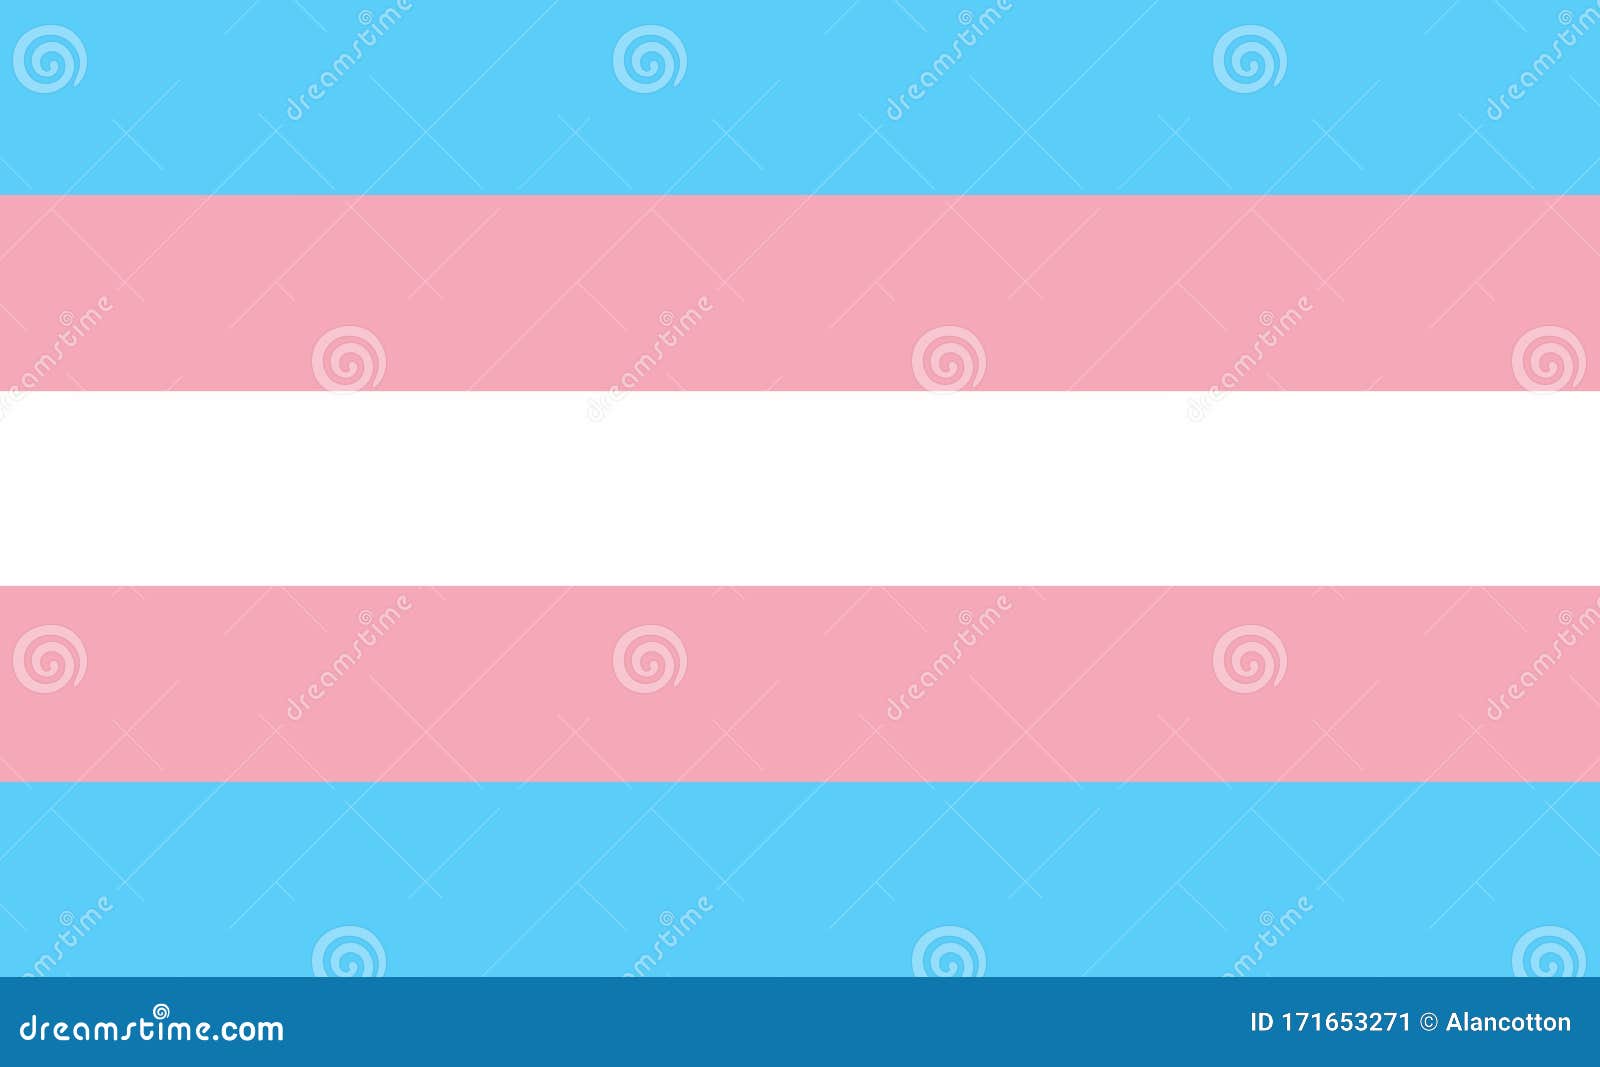 Transgender Pride Flag Colors Stock Vector Illustration Of Background Gender